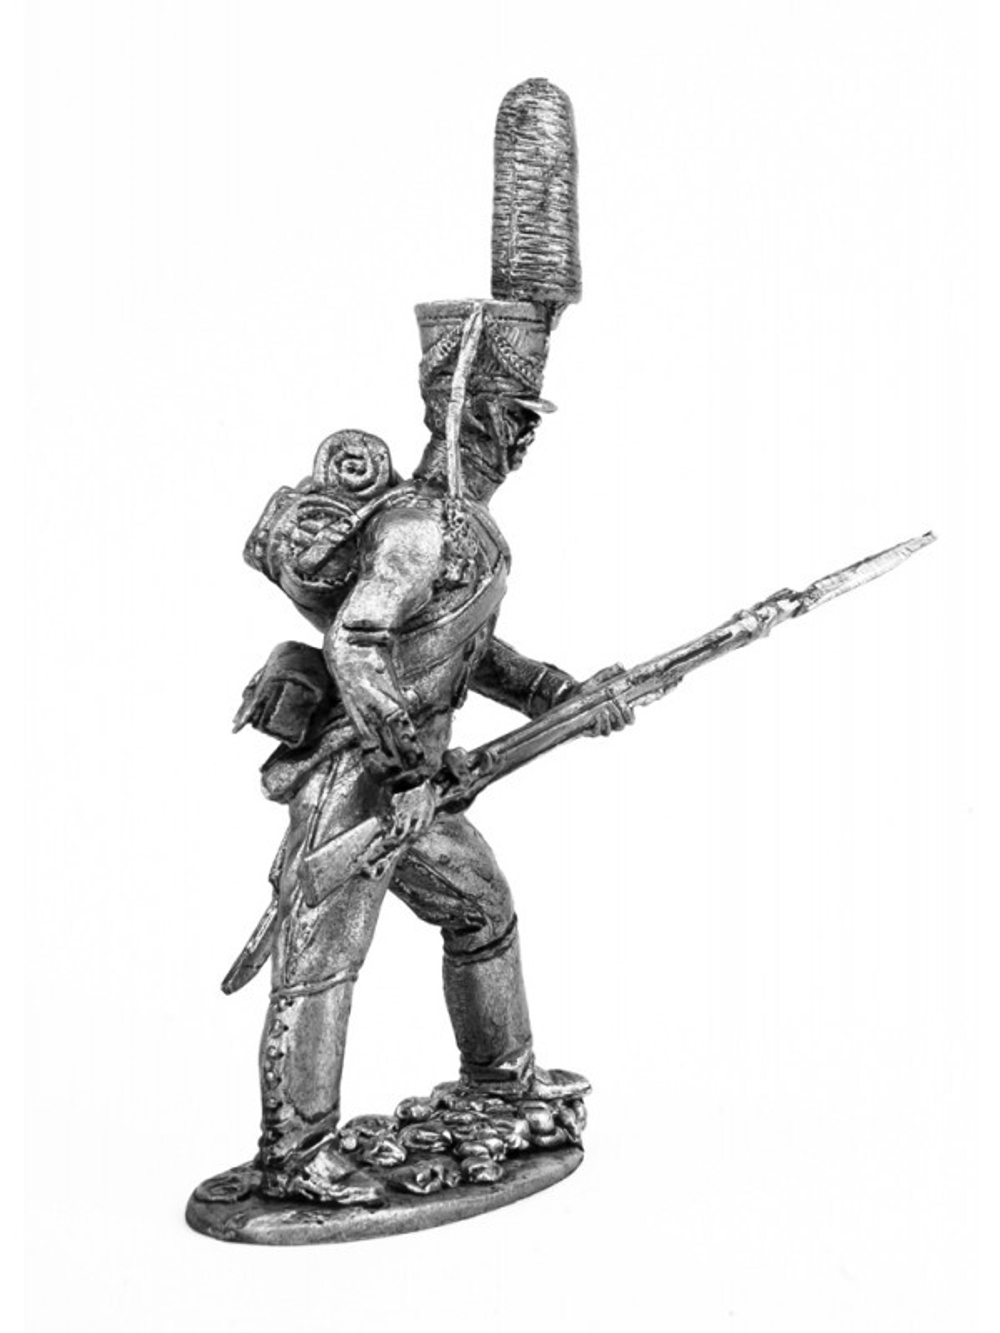 Оловянный солдатик Рядовой гренадерской роты морского полка, ноябрь 1810- февраль 1811 г.